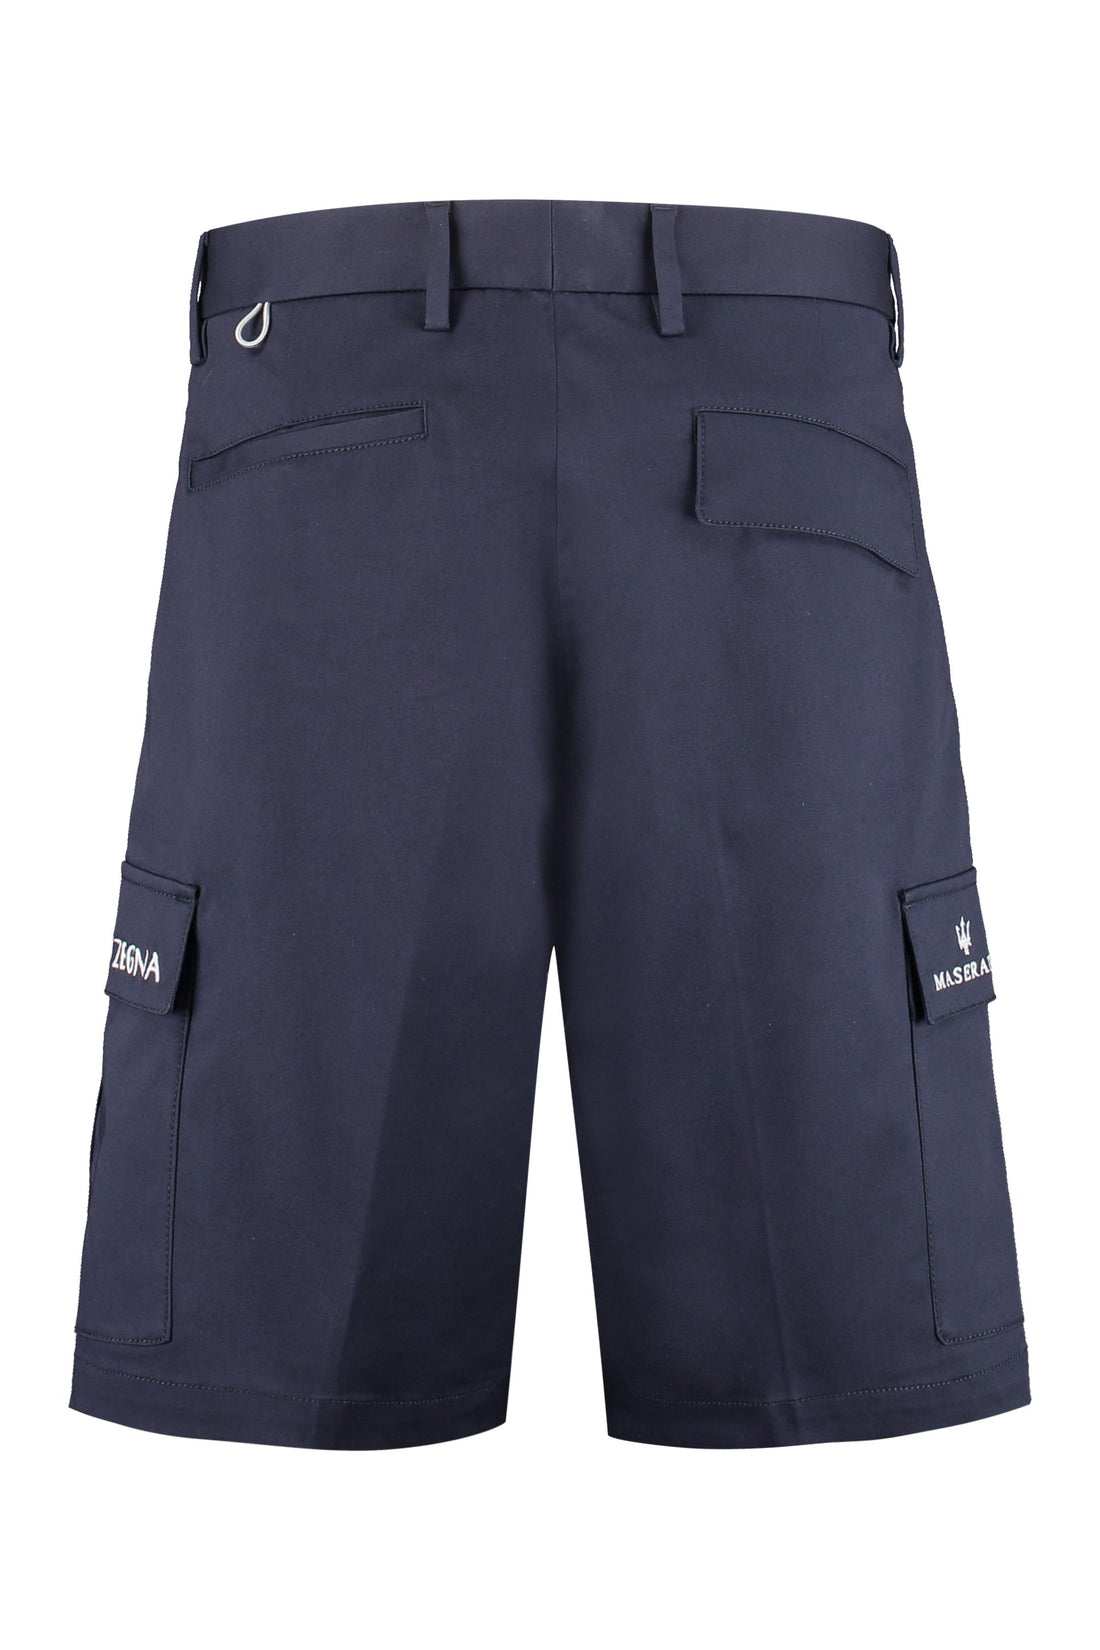 Zegna-OUTLET-SALE-Cotton bermuda shorts-ARCHIVIST